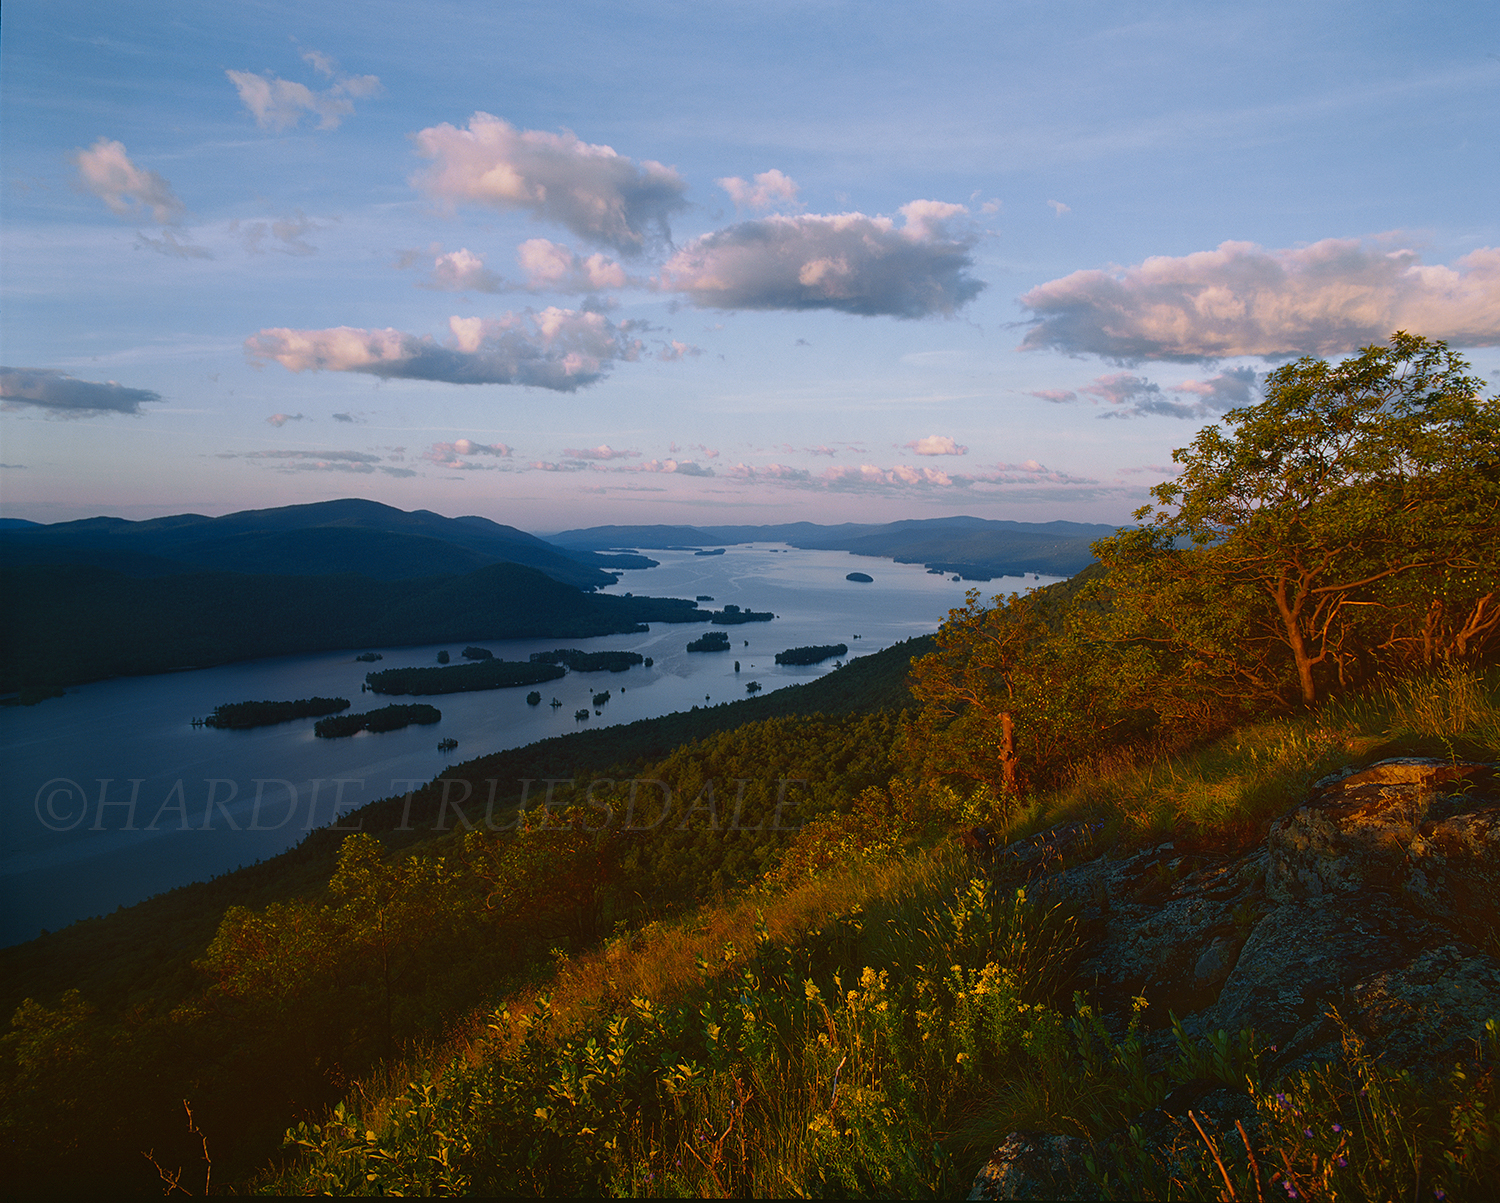  Adk#066 "Northwest Bay, Lake George, Adirondack Preserve, NY" 